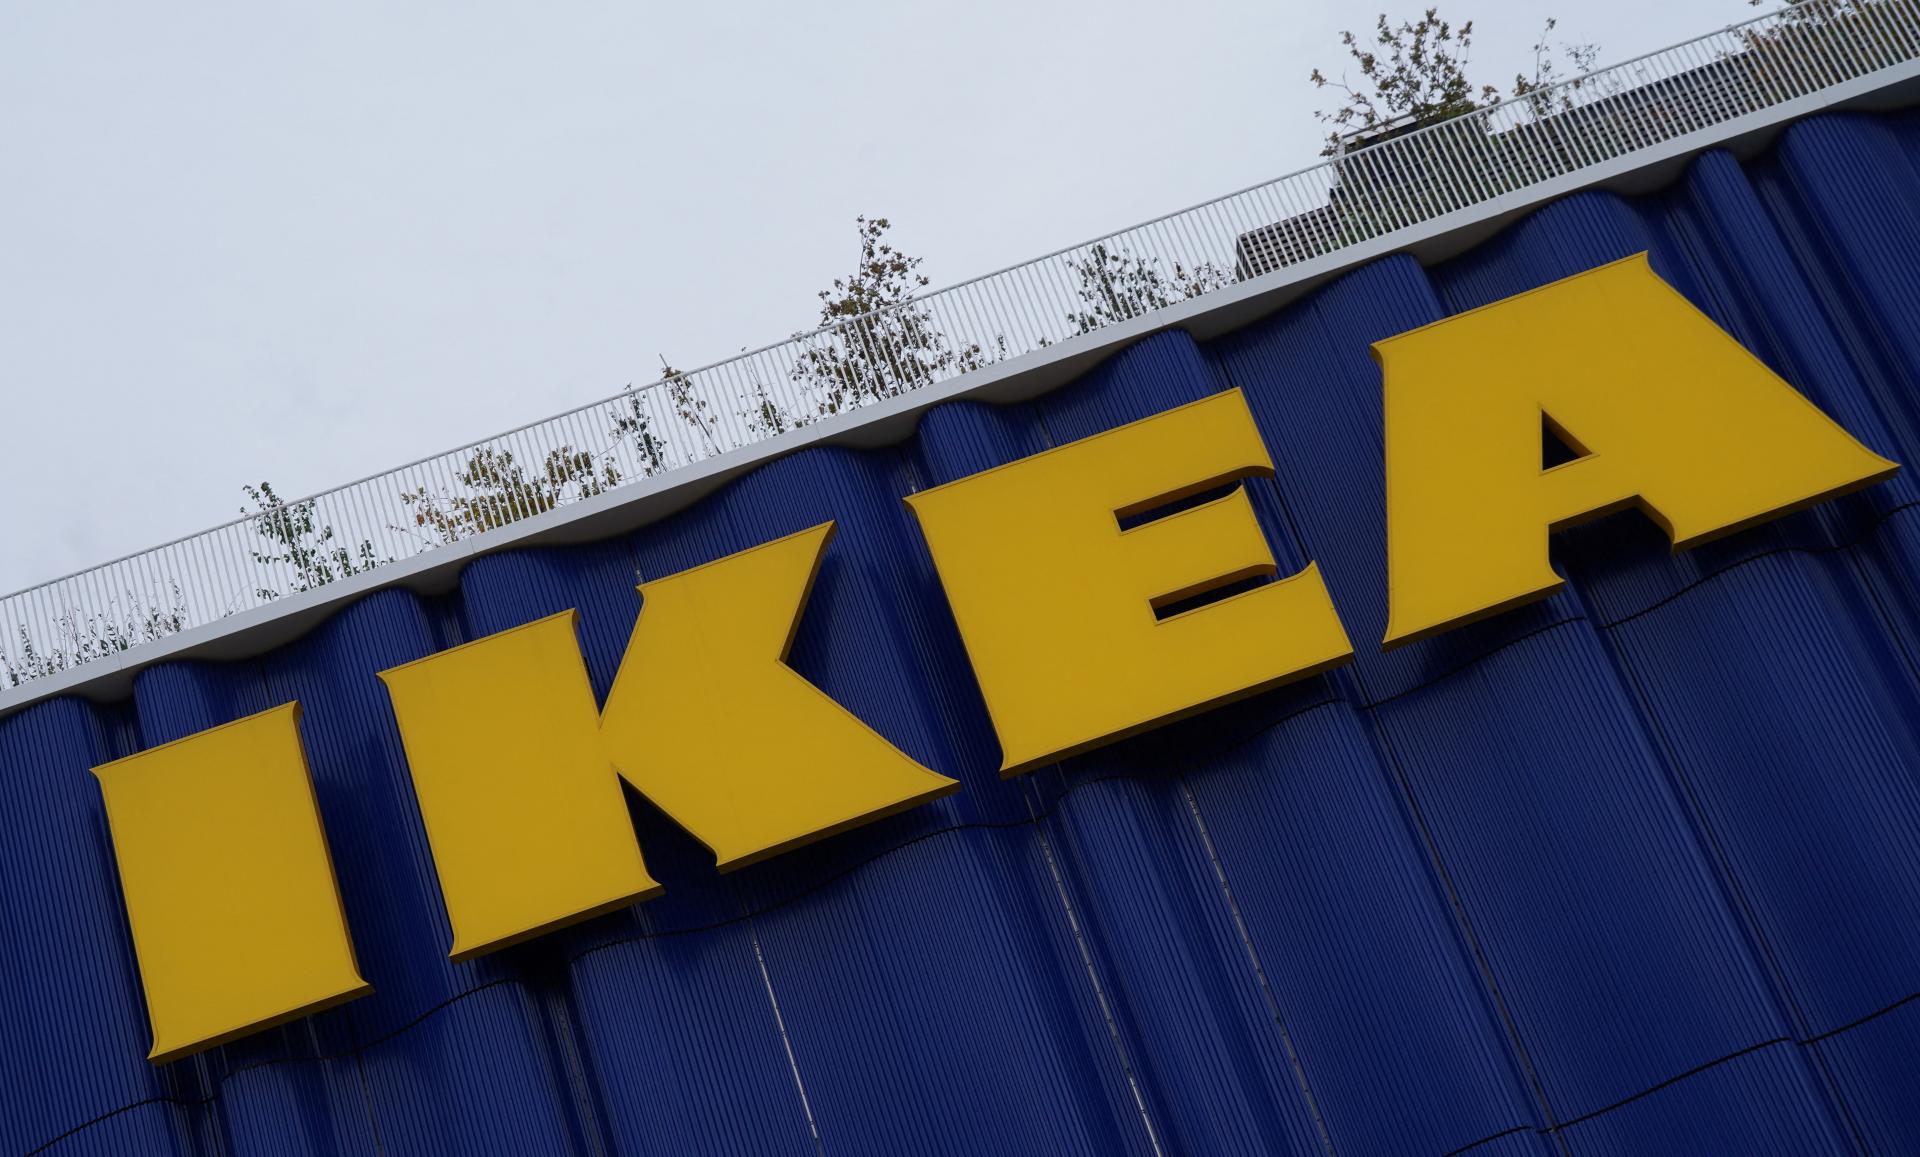 Spoločnosť IKEA má za sebou úspešný rok, zisk zvýšila viac než dvojnásobne